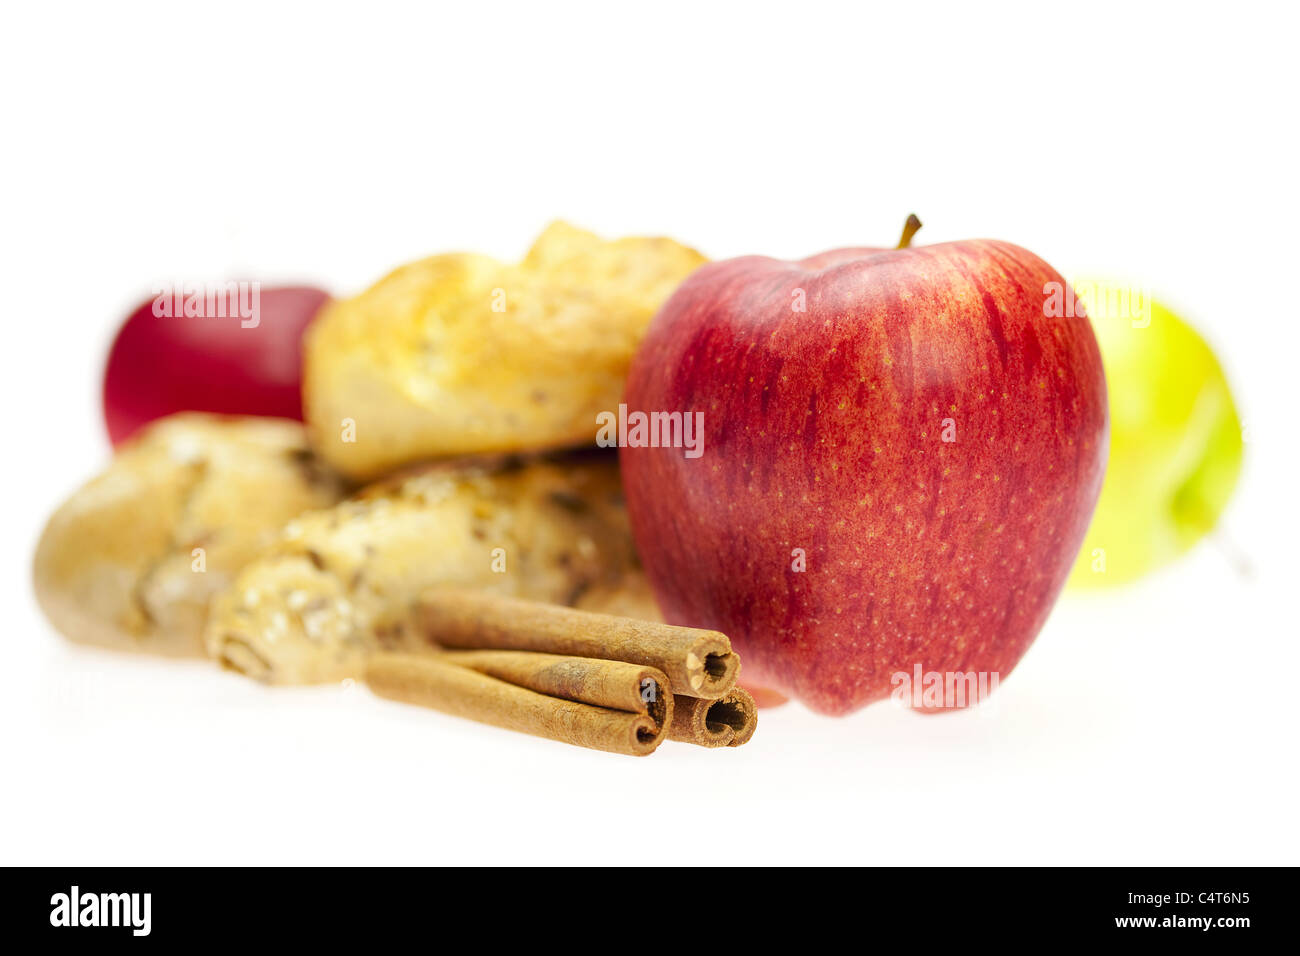 Apfel, Brot und Zimt isoliert auf weiss Stockfoto